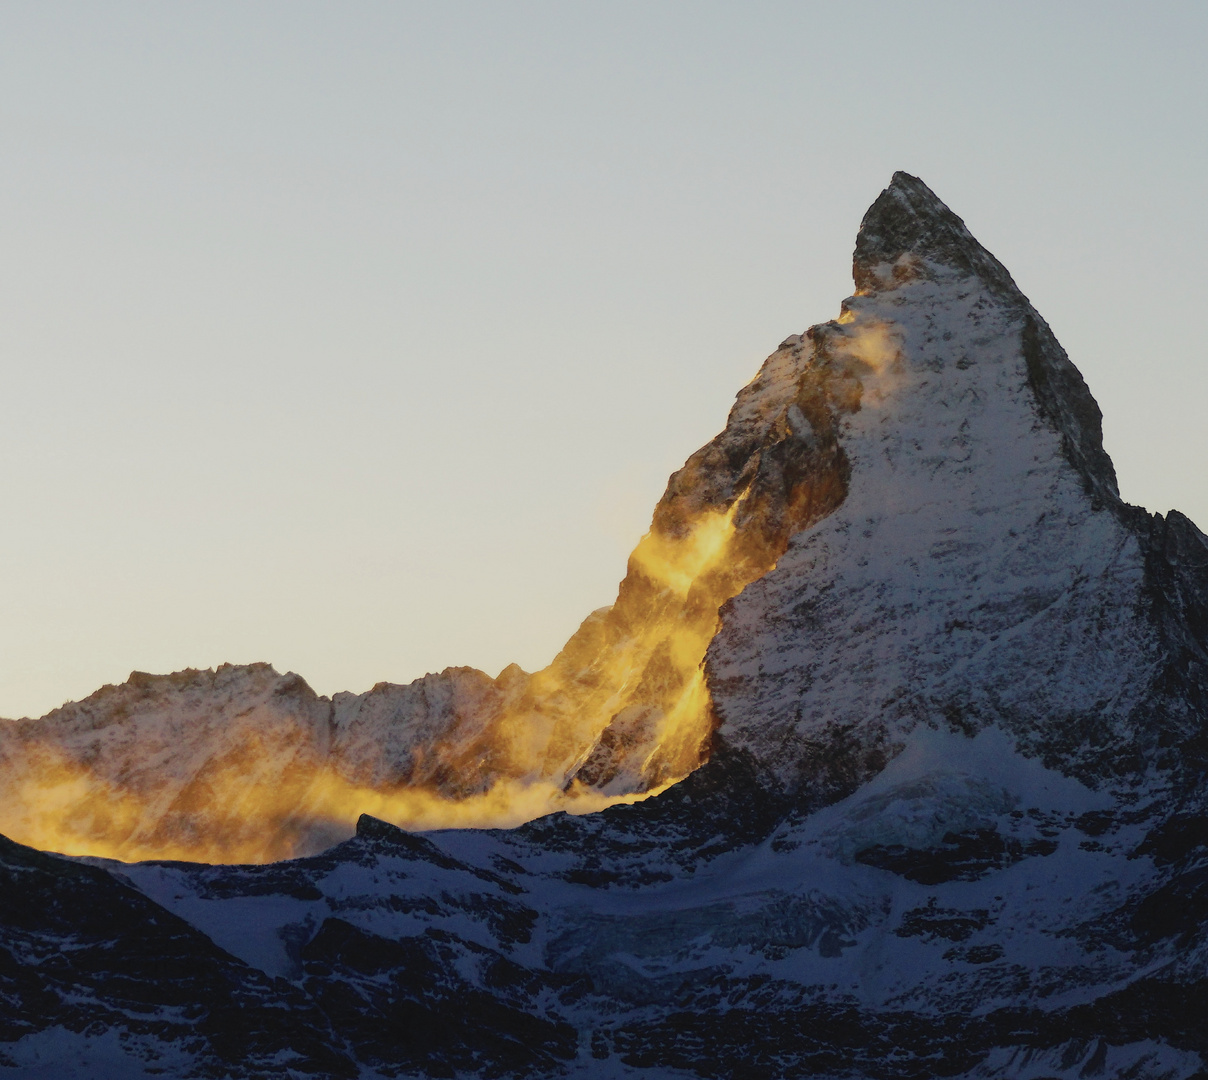 Sunset at Matterhorn 